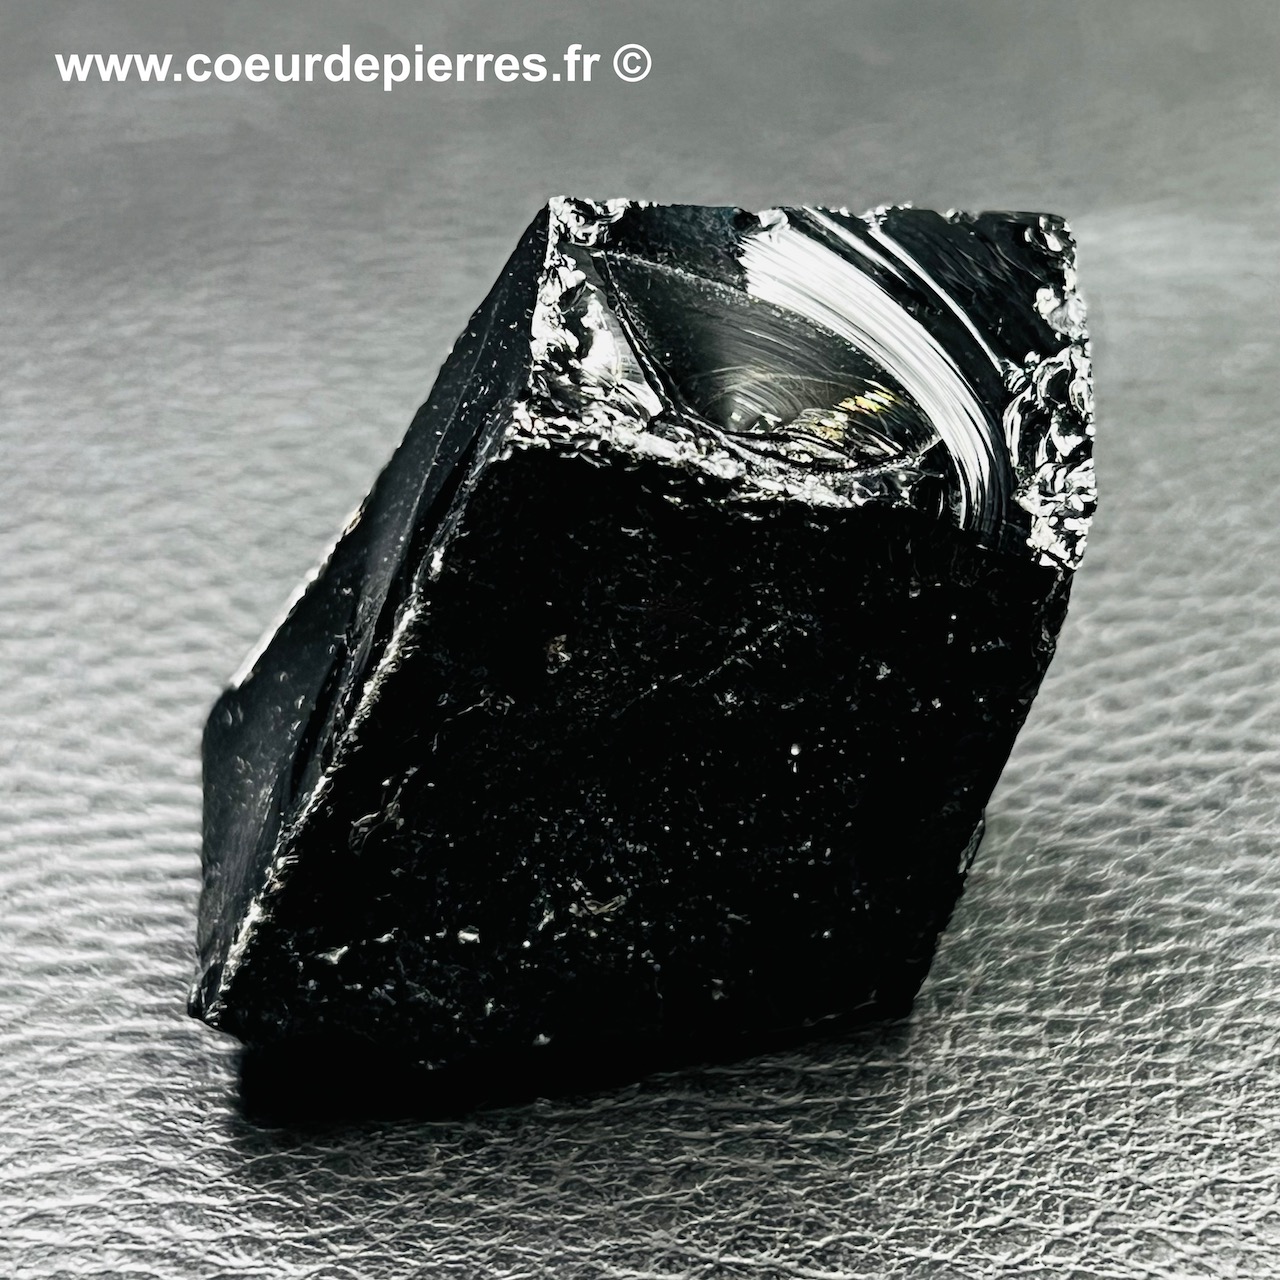 Obsidienne noire brute “larme d’apache” du Mexique (réf ob1)